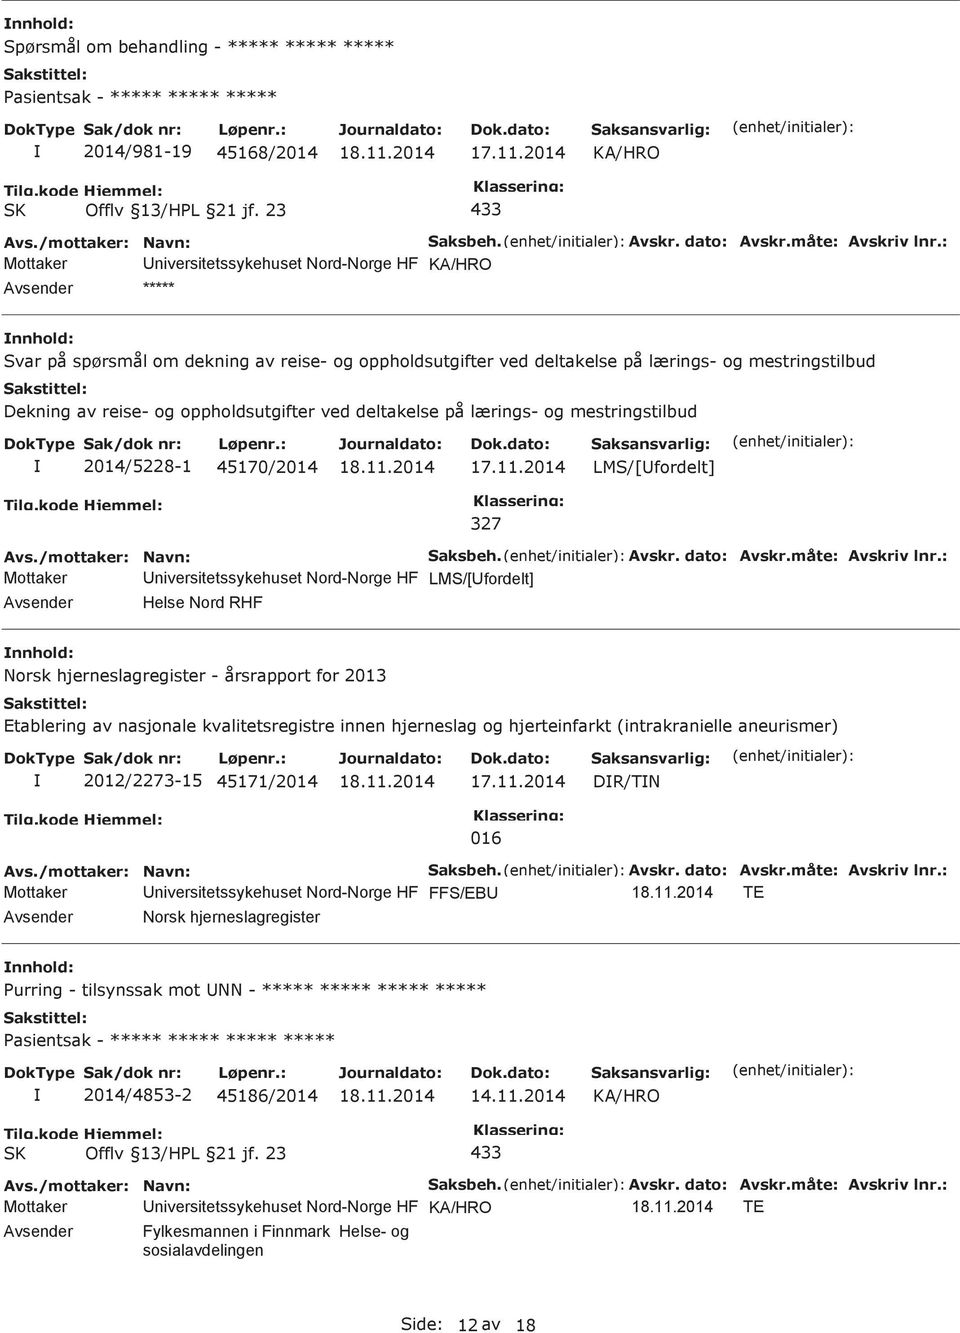 LMS/[fordelt] Helse Nord RHF Norsk hjerneslagregister - årsrapport for 2013 Etablering av nasjonale kvalitetsregistre innen hjerneslag og hjerteinfarkt (intrakranielle aneurismer) 2012/2273-15